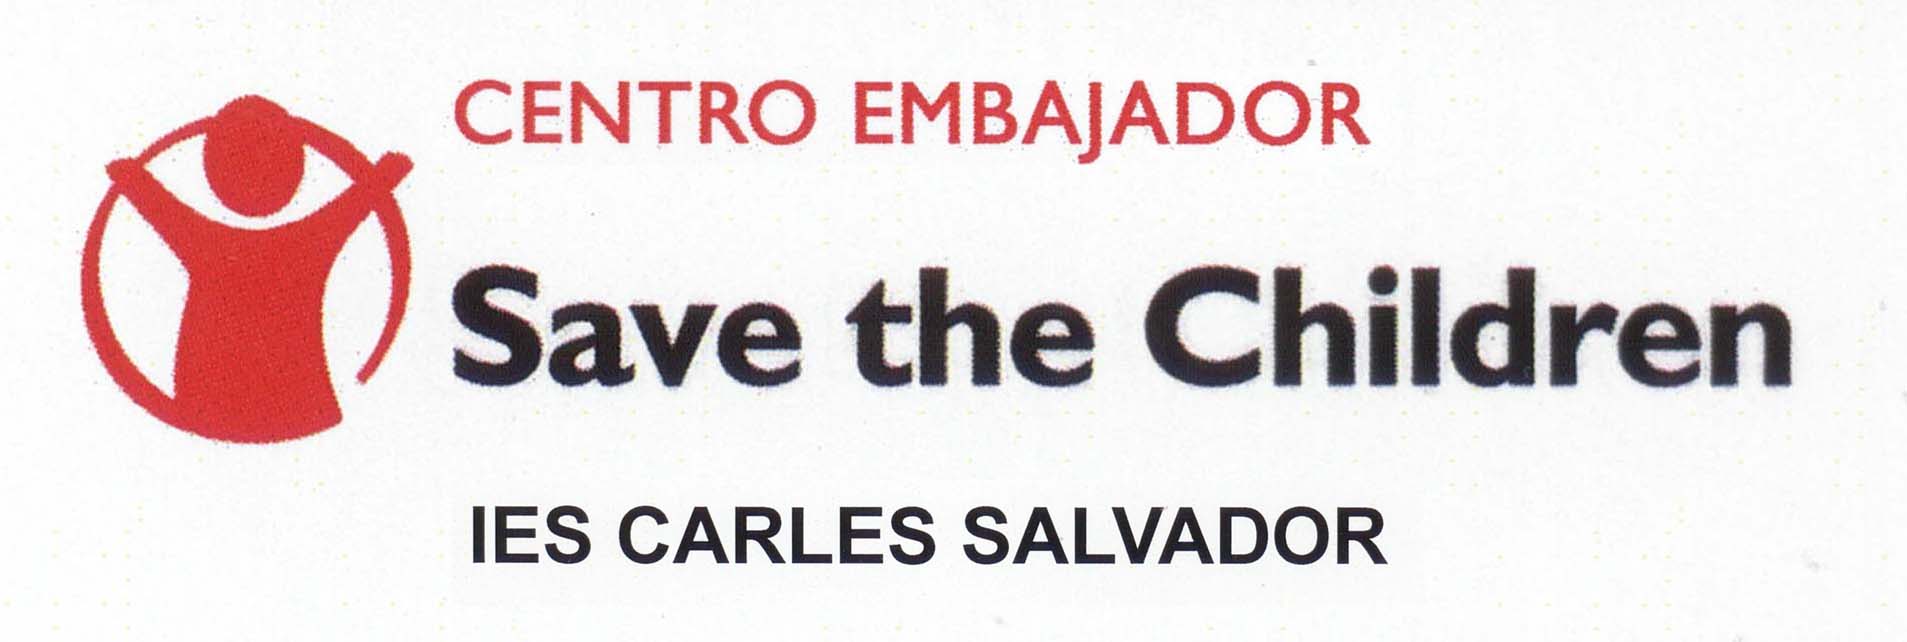 save_the_children_sello copia